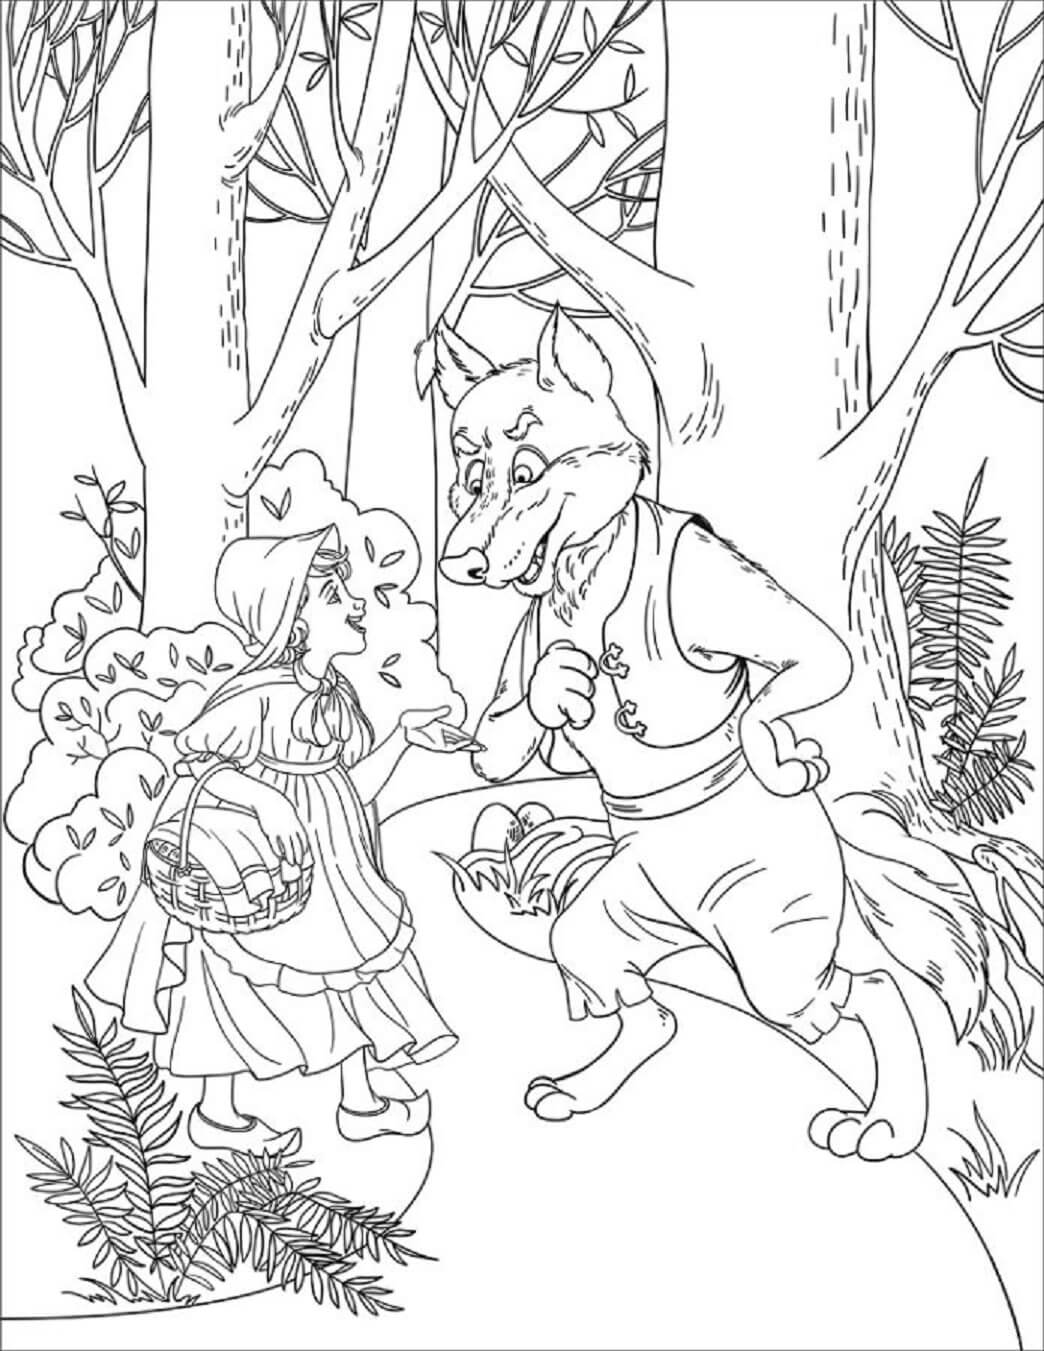 Chapeuzinho Vermelho e Lobo na Selva para colorir